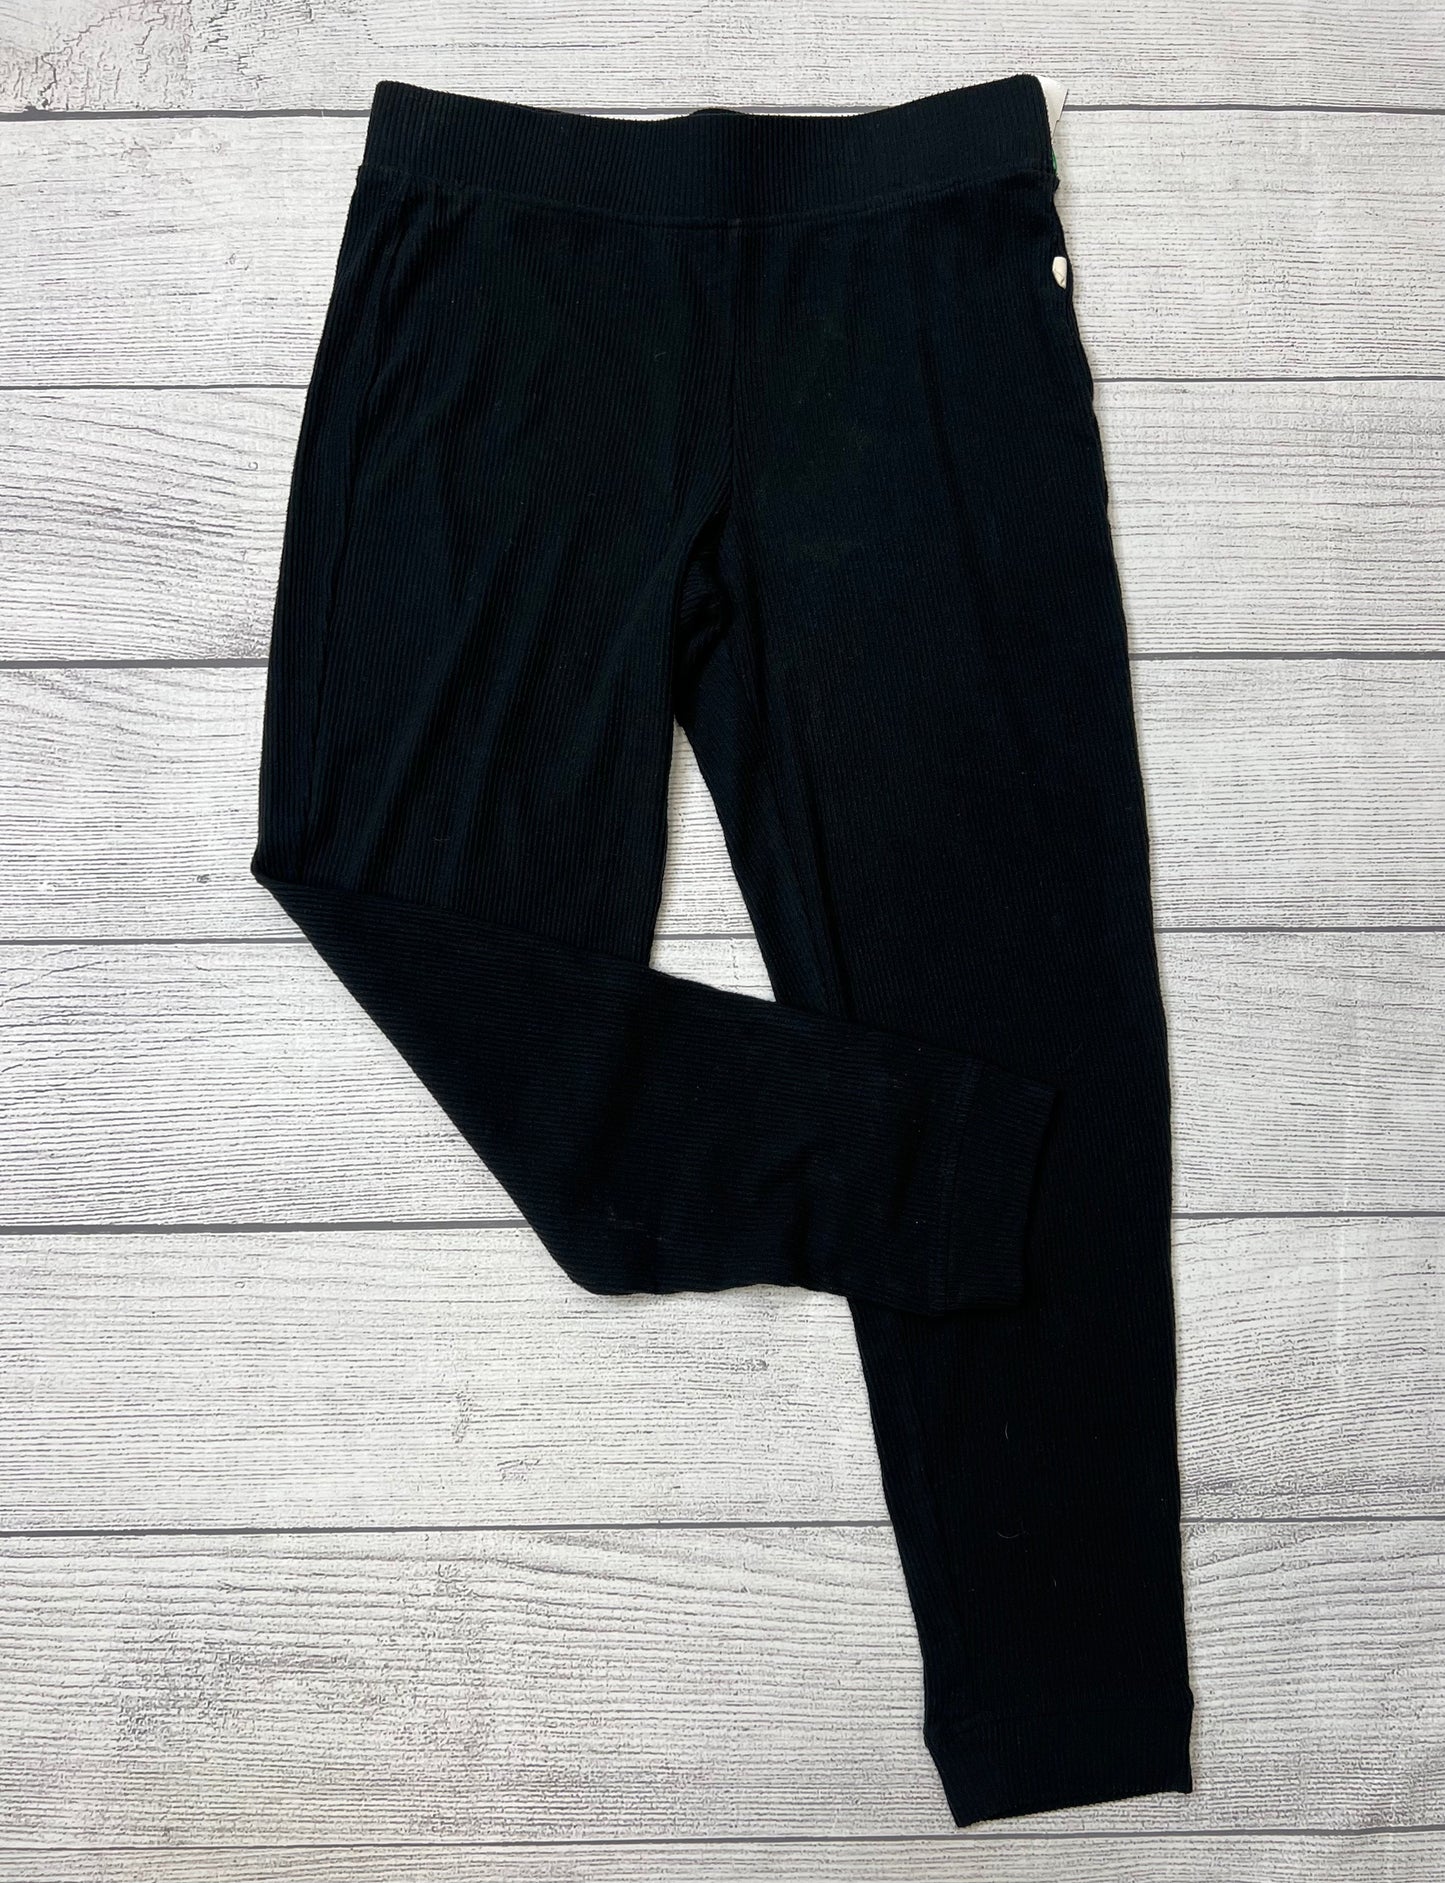 Pants Designer By Ugg  Size: 12